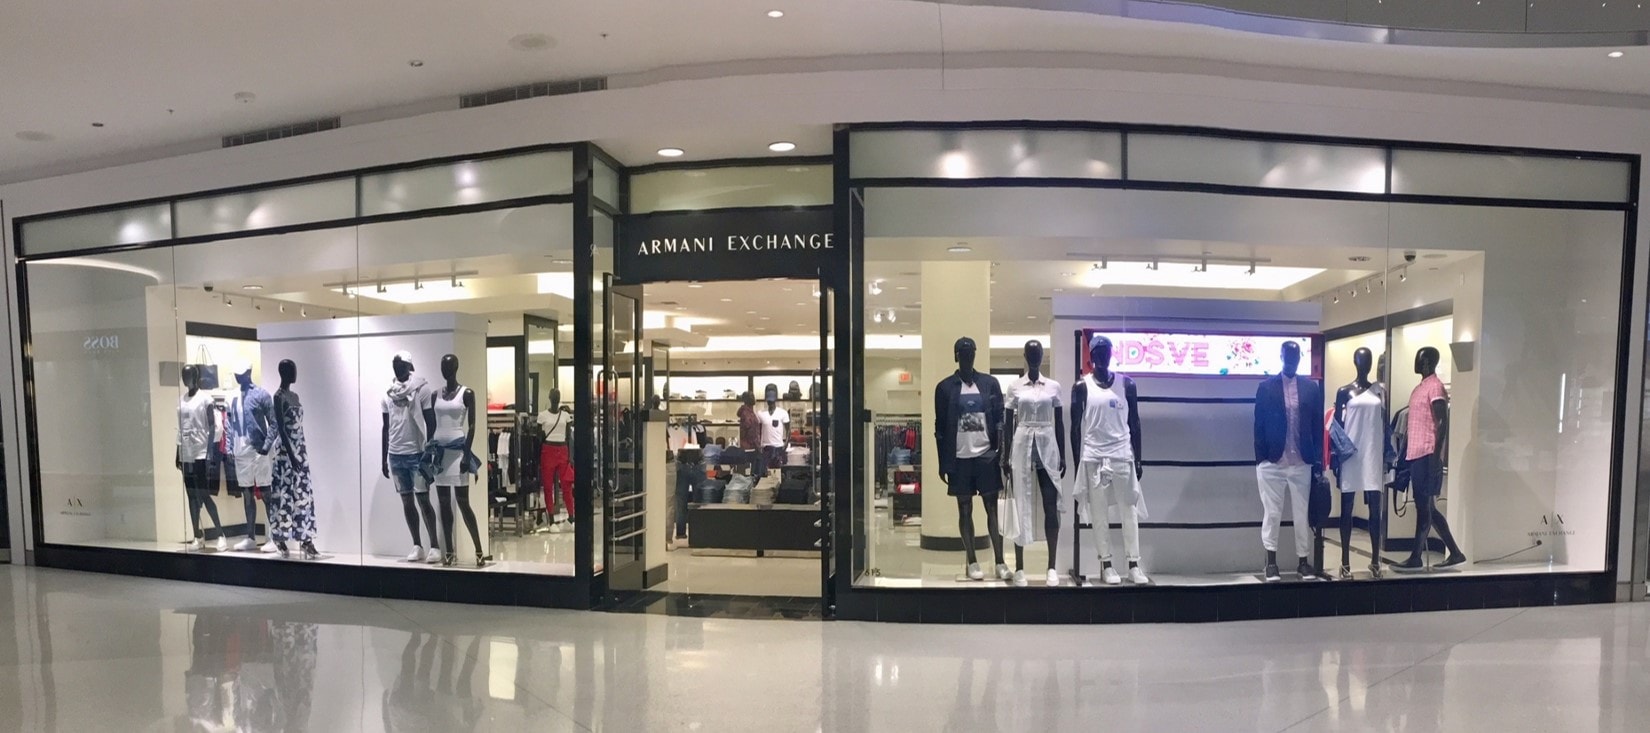 armani exchange stores near me - 55 